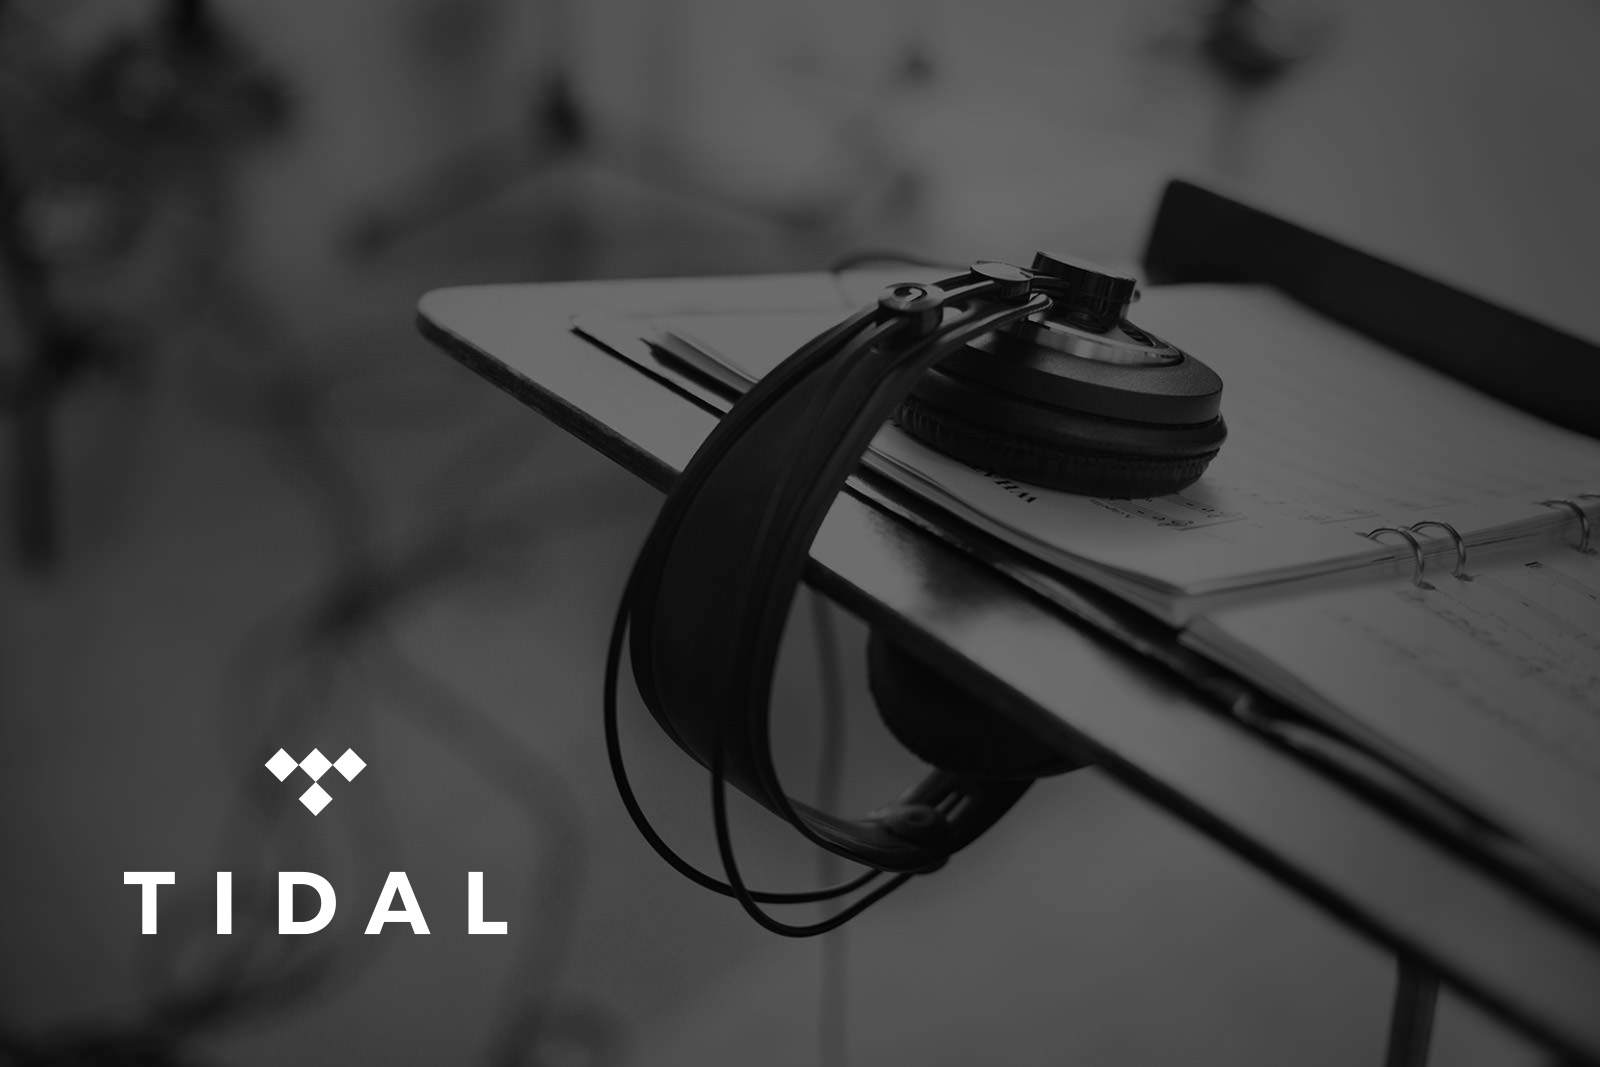 ОБЗОР: Tidal — стриминговый сервис с самым лучшим качеством звука